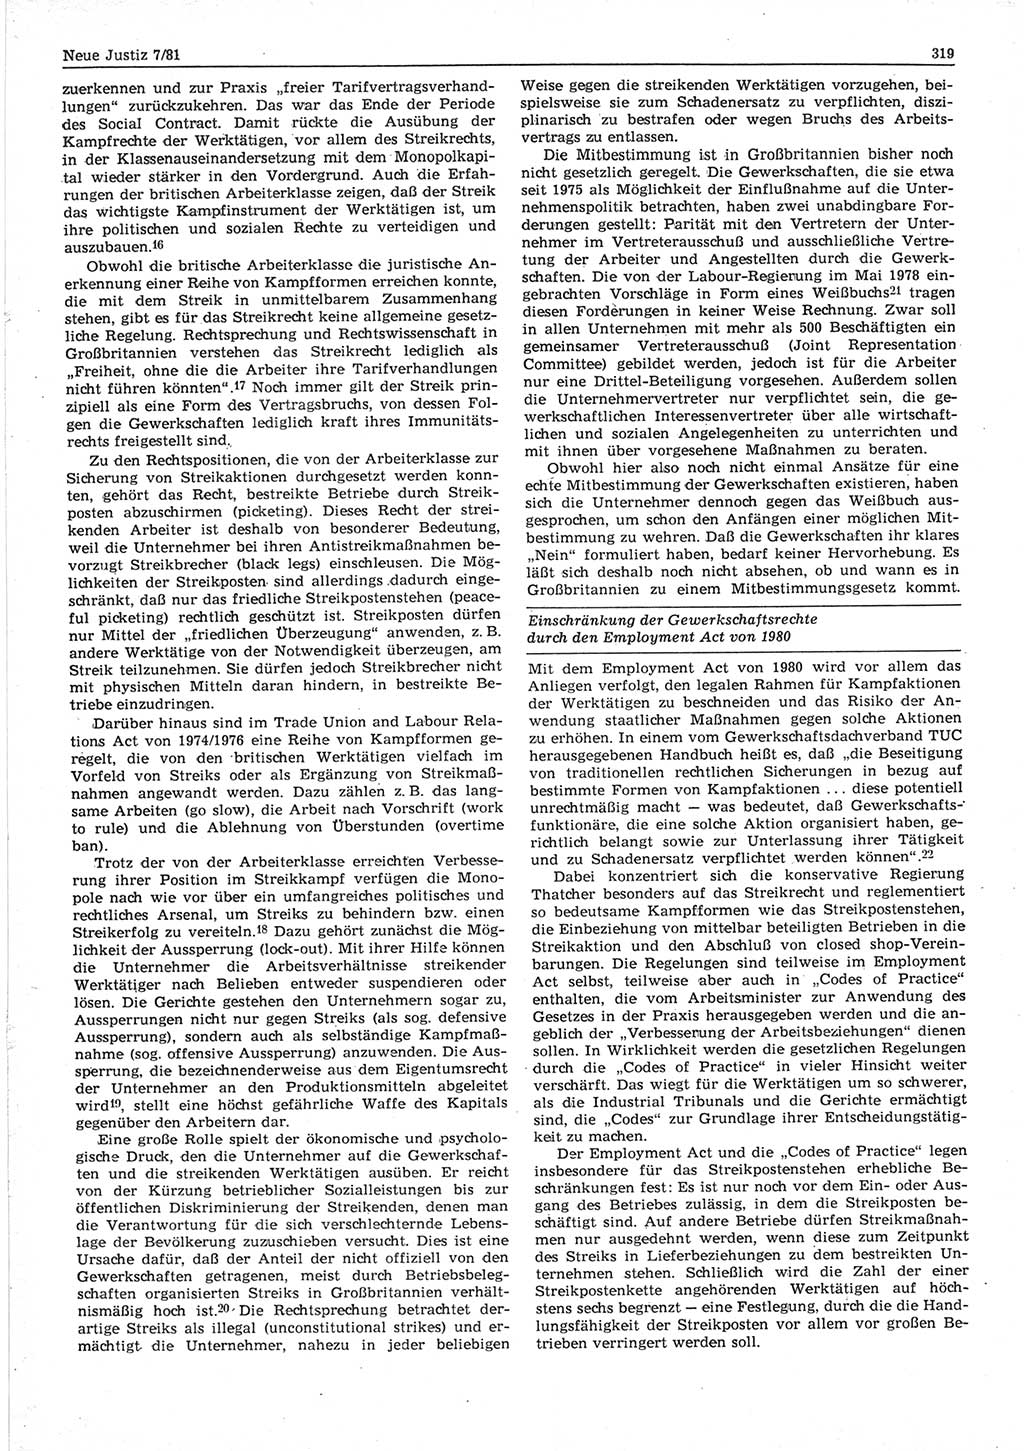 Neue Justiz (NJ), Zeitschrift für sozialistisches Recht und Gesetzlichkeit [Deutsche Demokratische Republik (DDR)], 35. Jahrgang 1981, Seite 319 (NJ DDR 1981, S. 319)